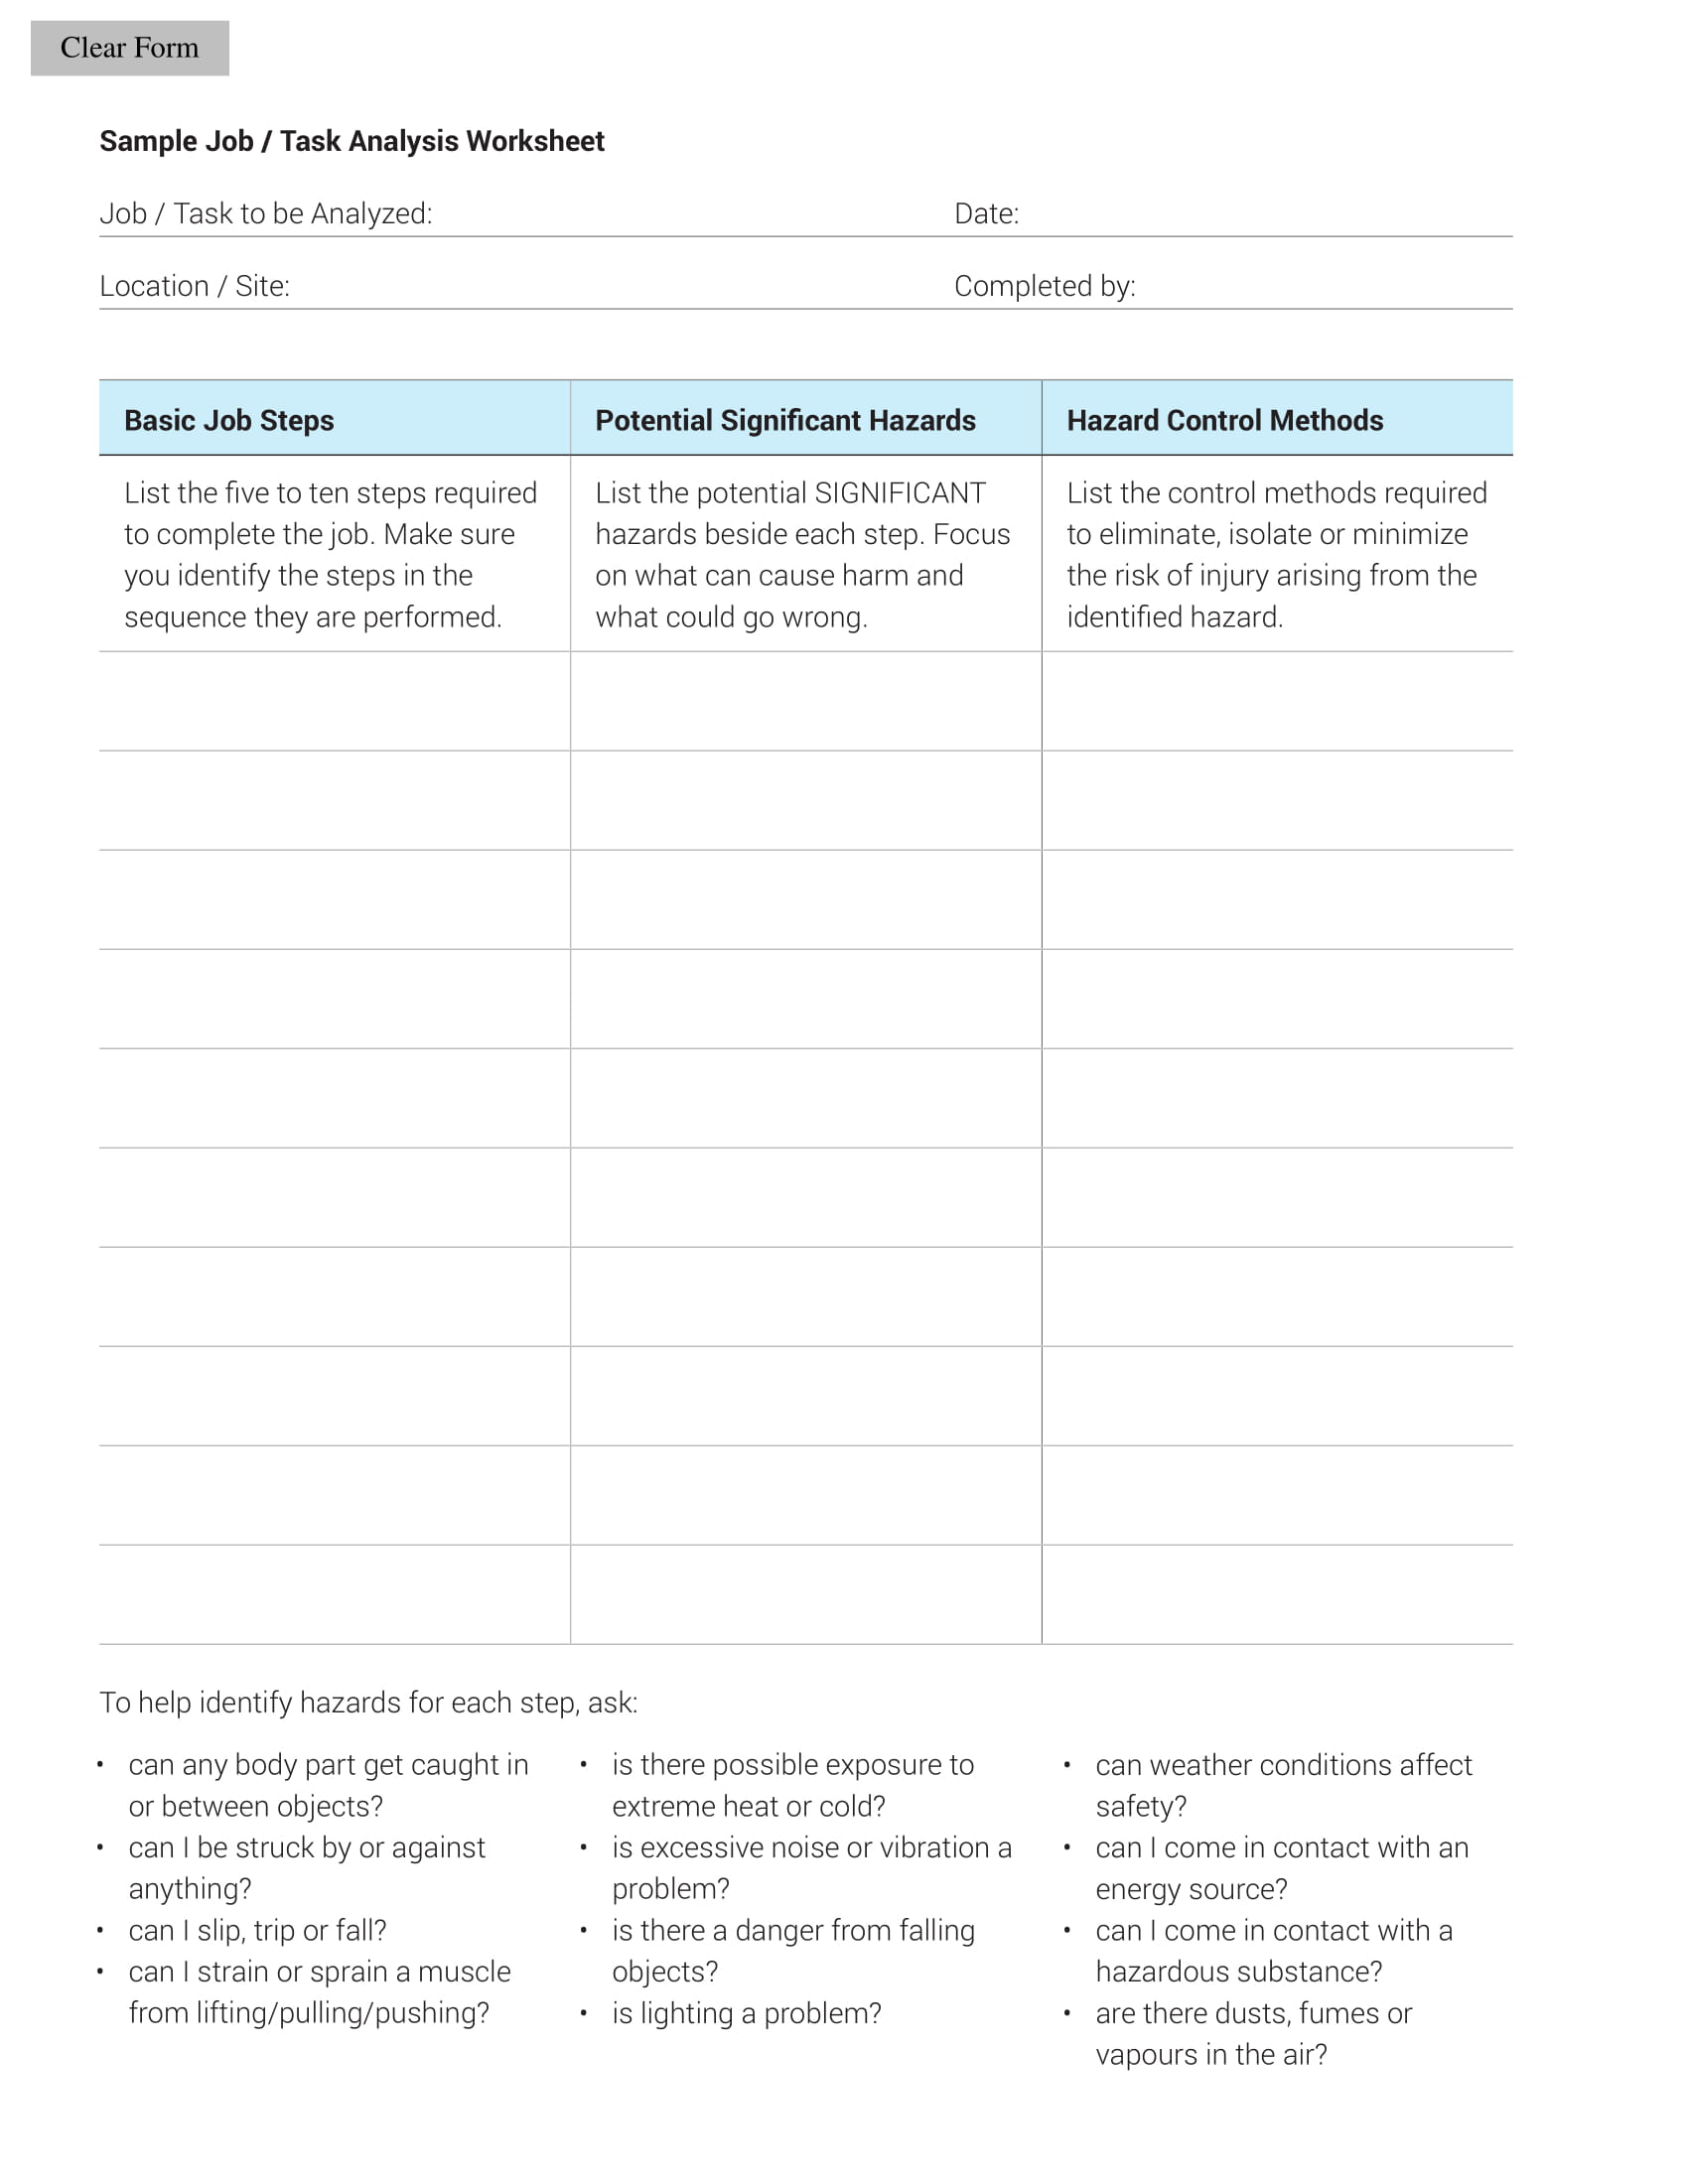 job or task analysis worksheet example 1